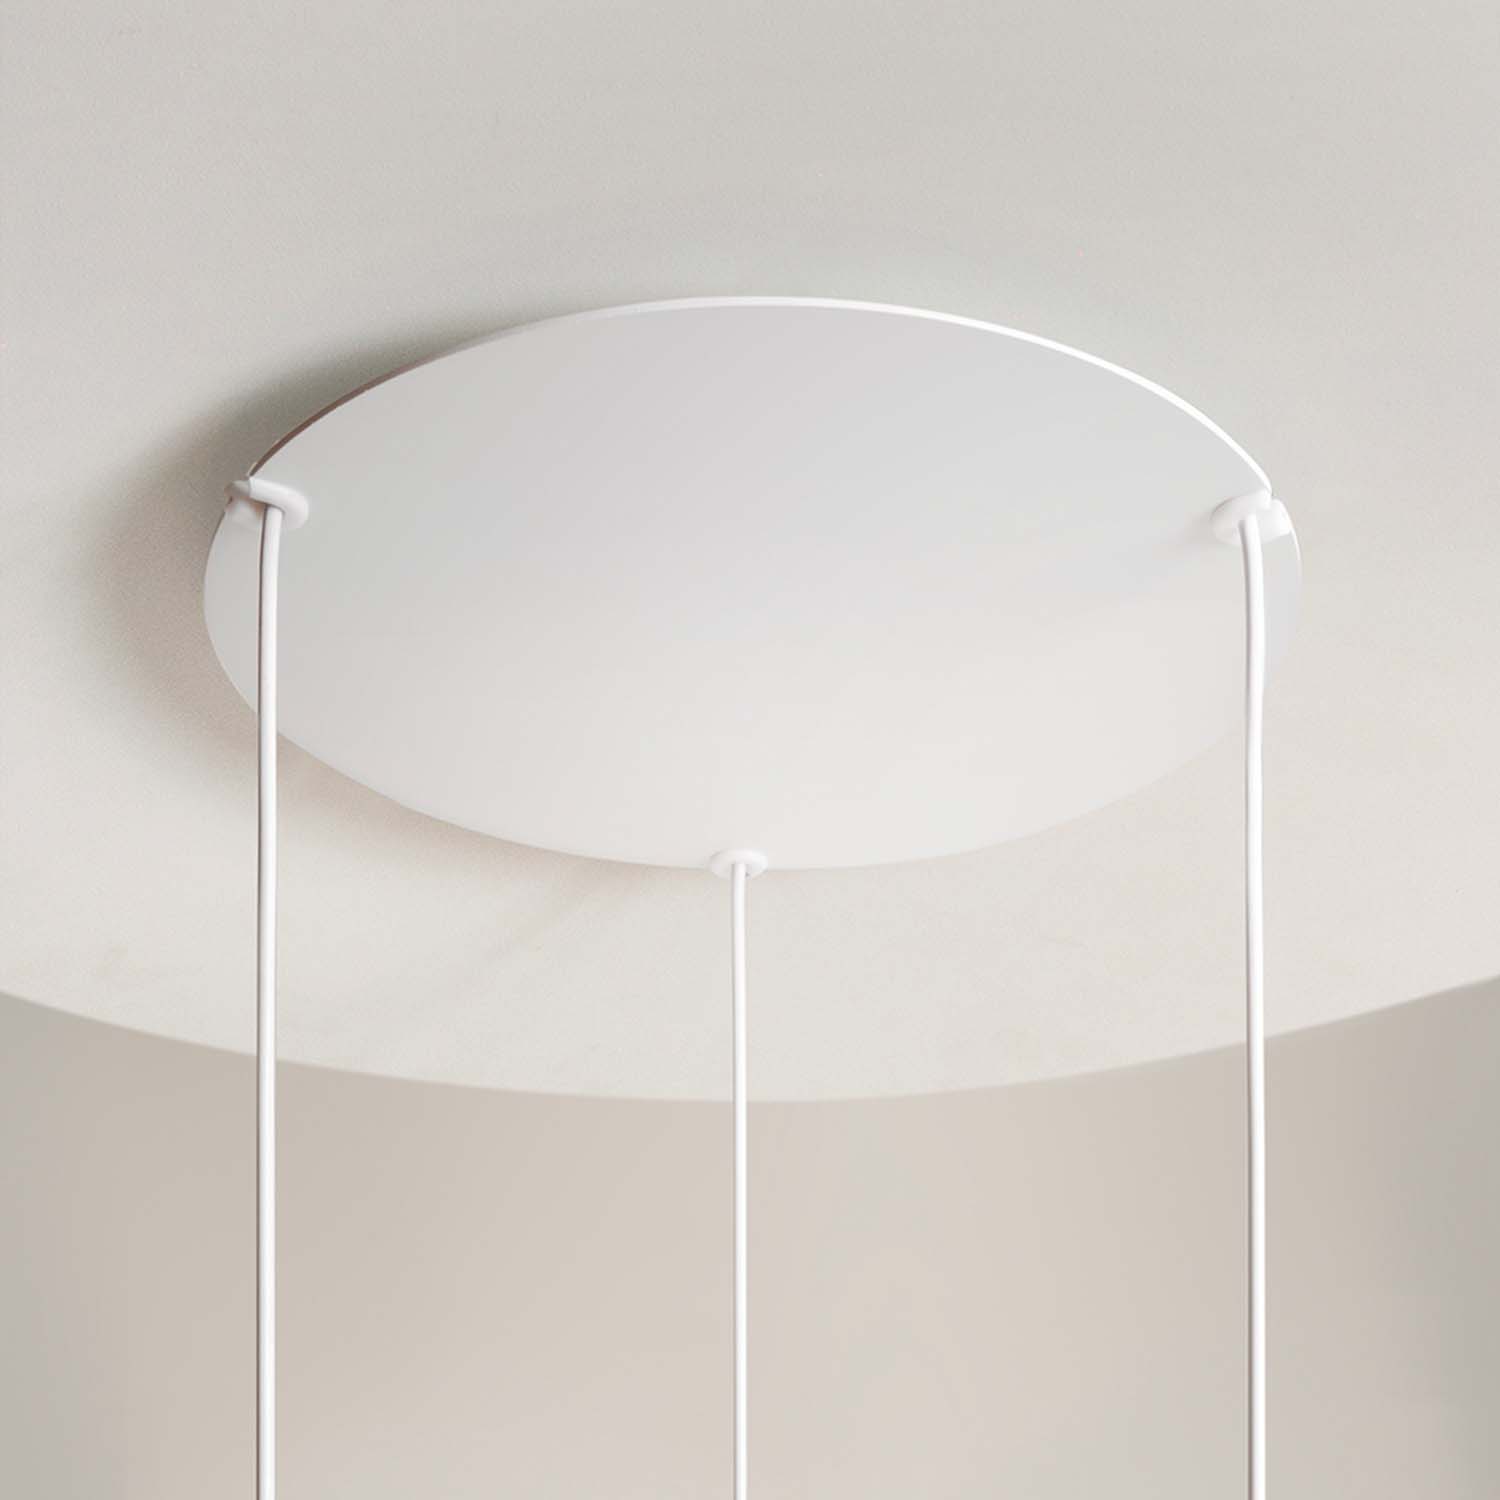 REFLEX – Design-Pendelleuchte mit weißem Scheibenraum